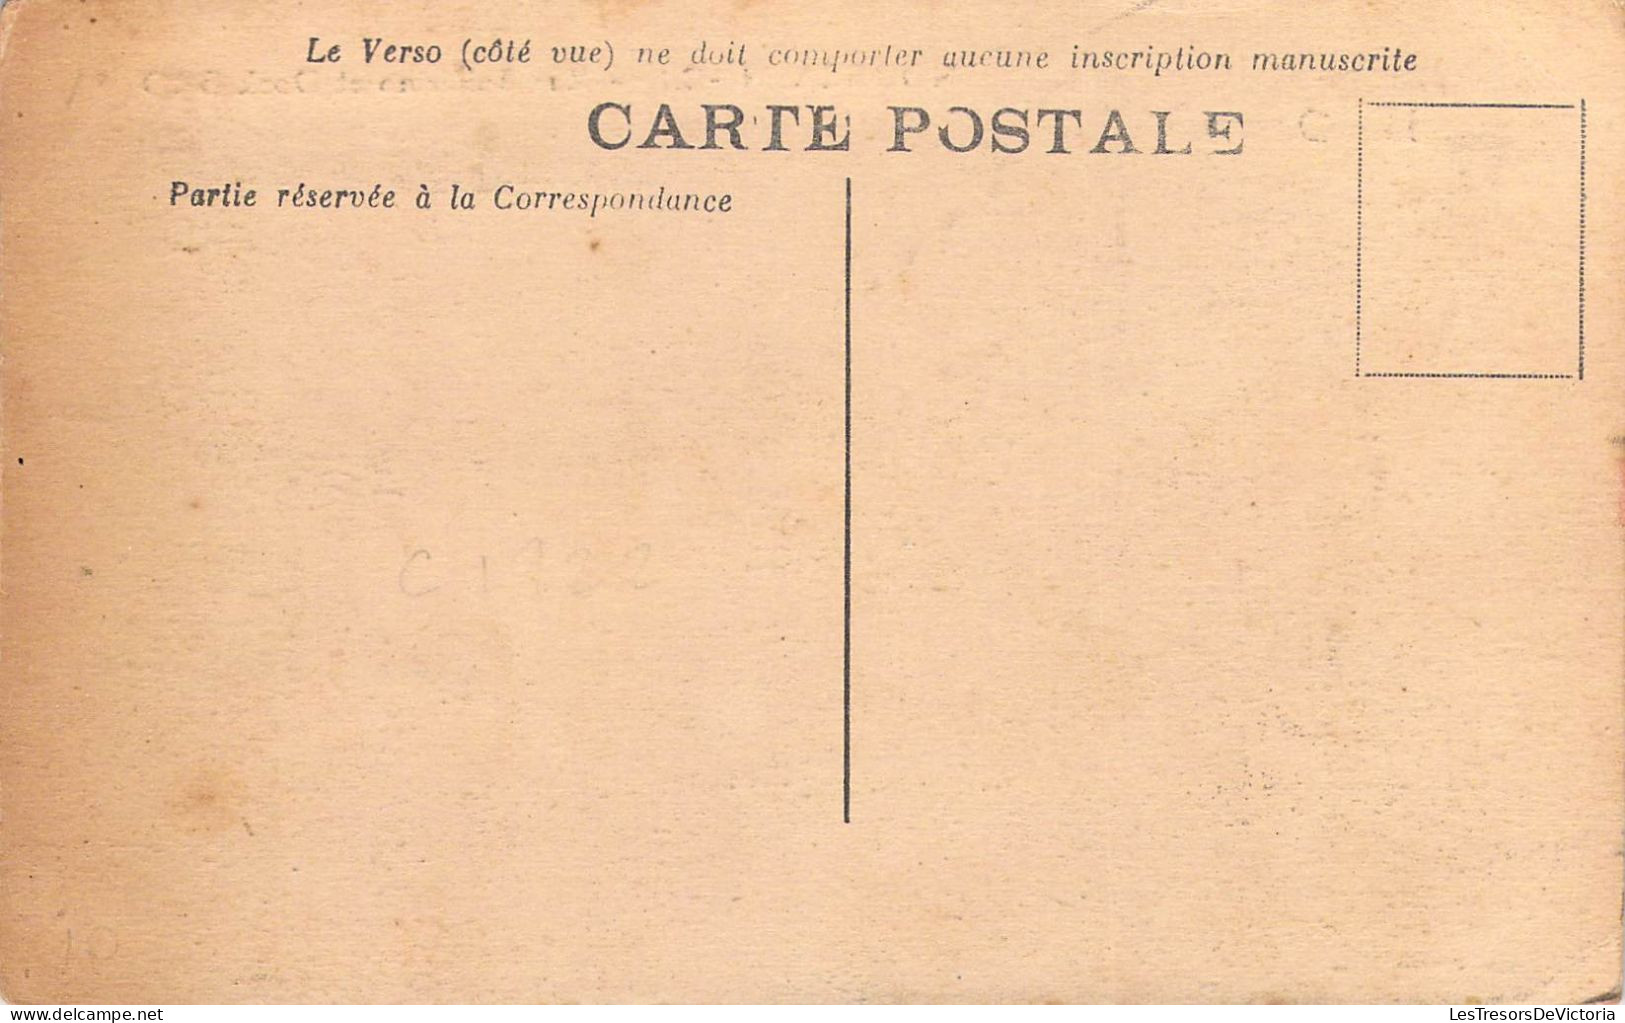 FRANCE - Nouvelle Calédonie - Nouméa - Rue Solférino Et Dock Bro - Carte Postale Ancienne - Nouvelle Calédonie